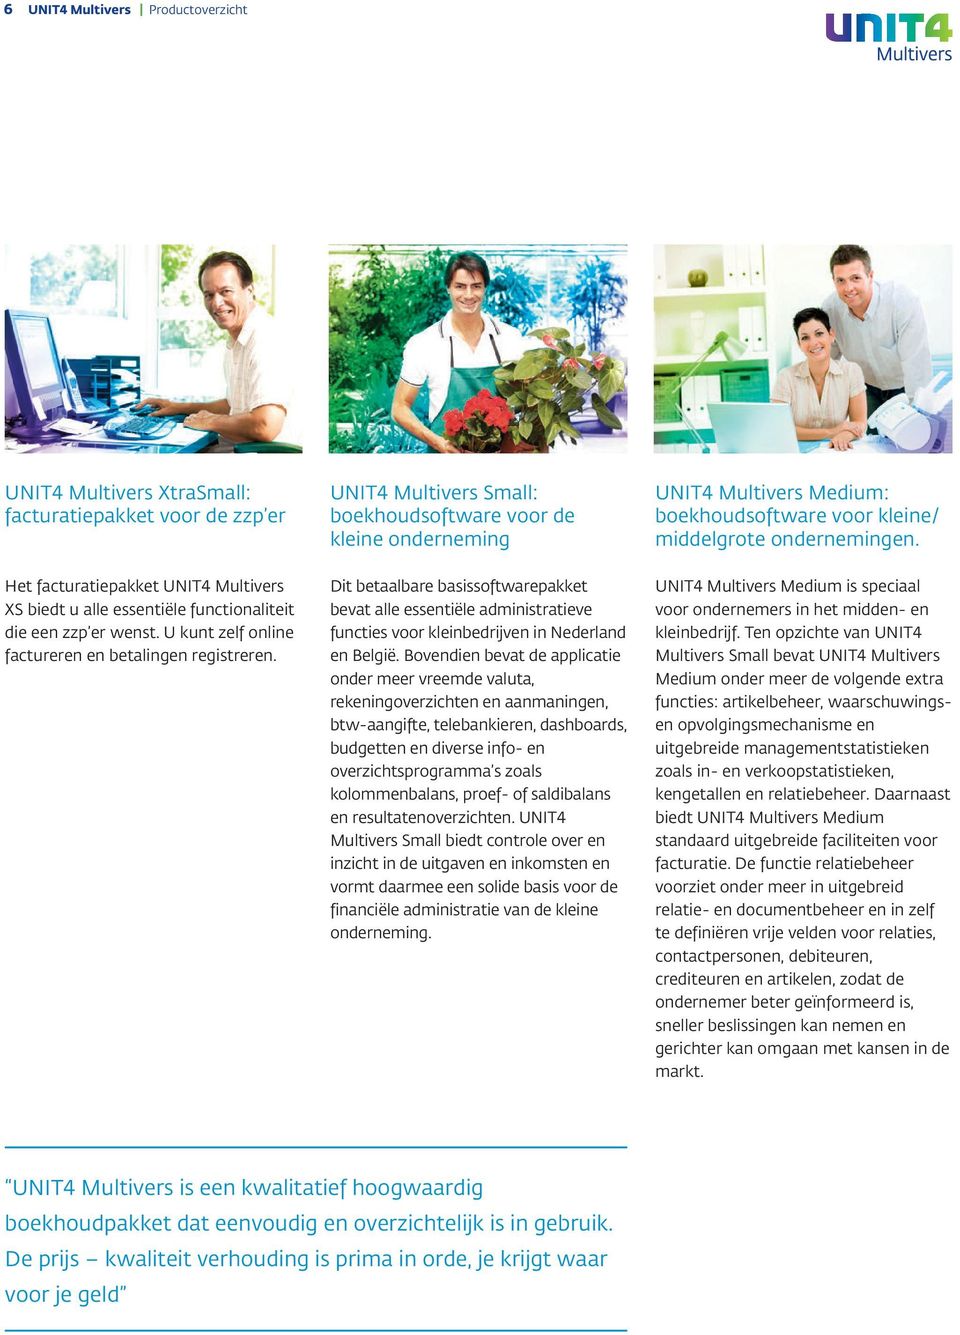 UNIT4 Multivers Small: boekhoudsoftware voor de kleine onderneming Dit betaalbare basissoftwarepakket bevat alle essentiële administratieve functies voor kleinbedrijven in Nederland en België.